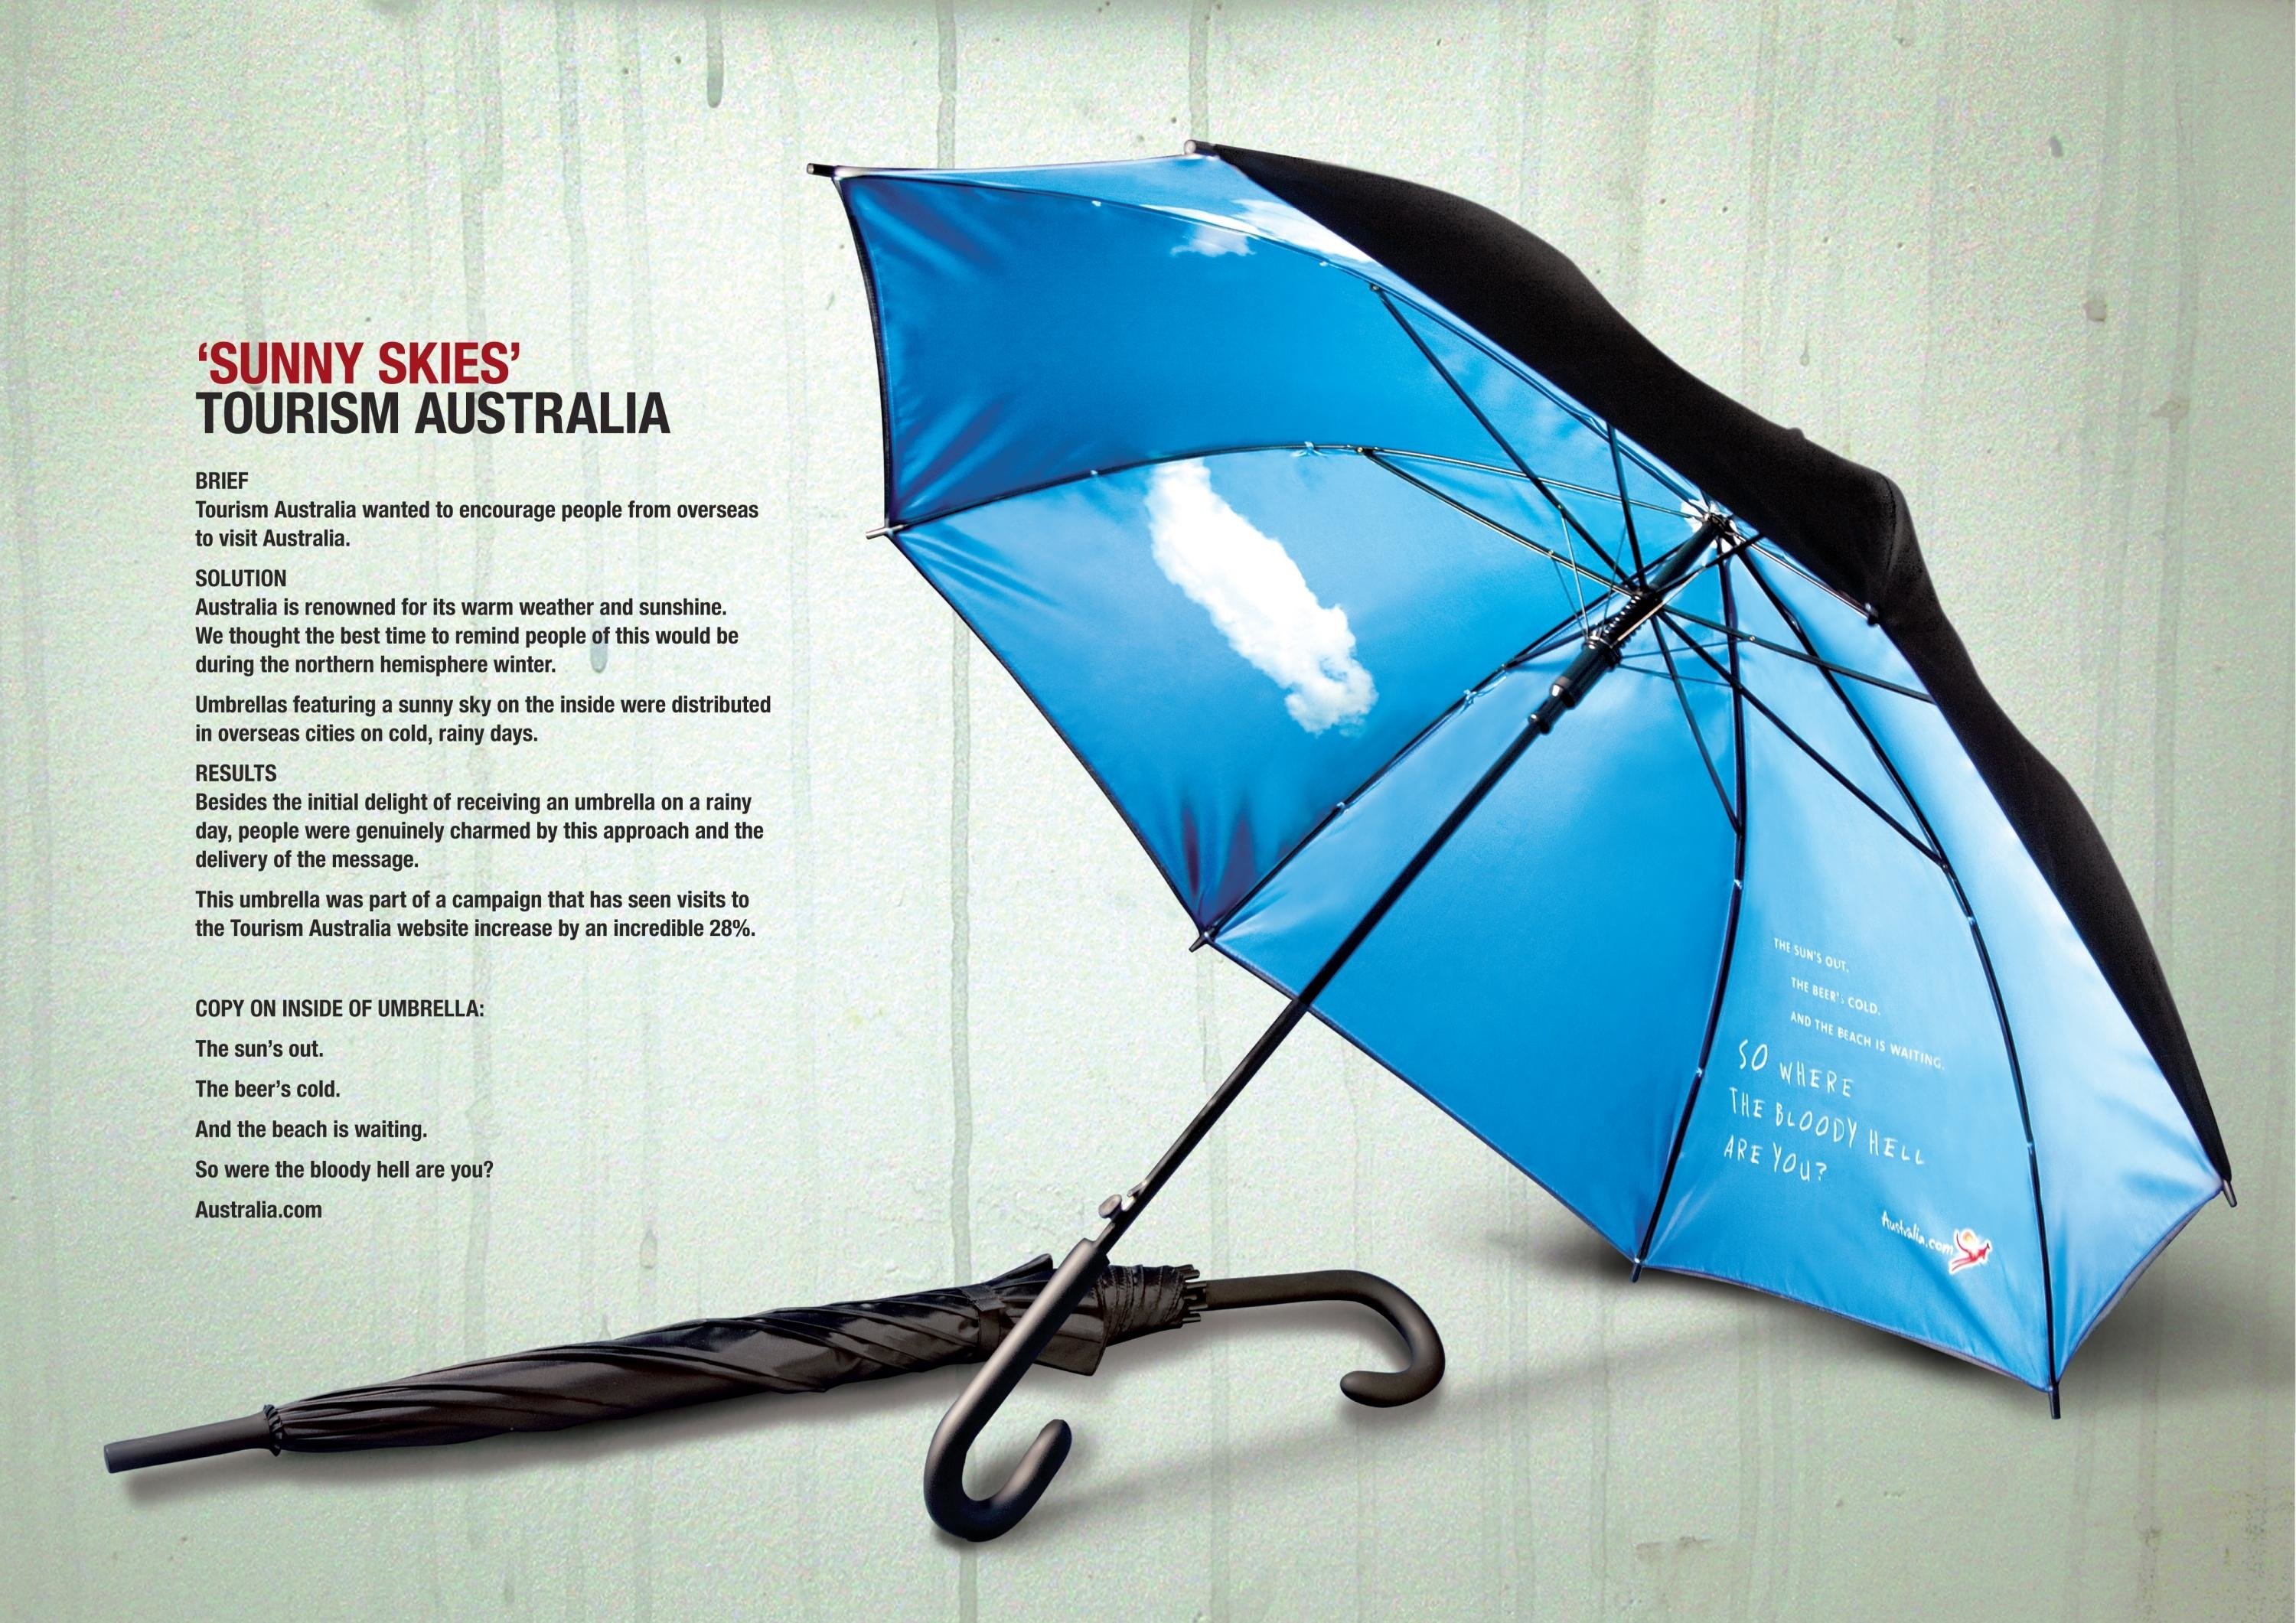 Роль зонтика